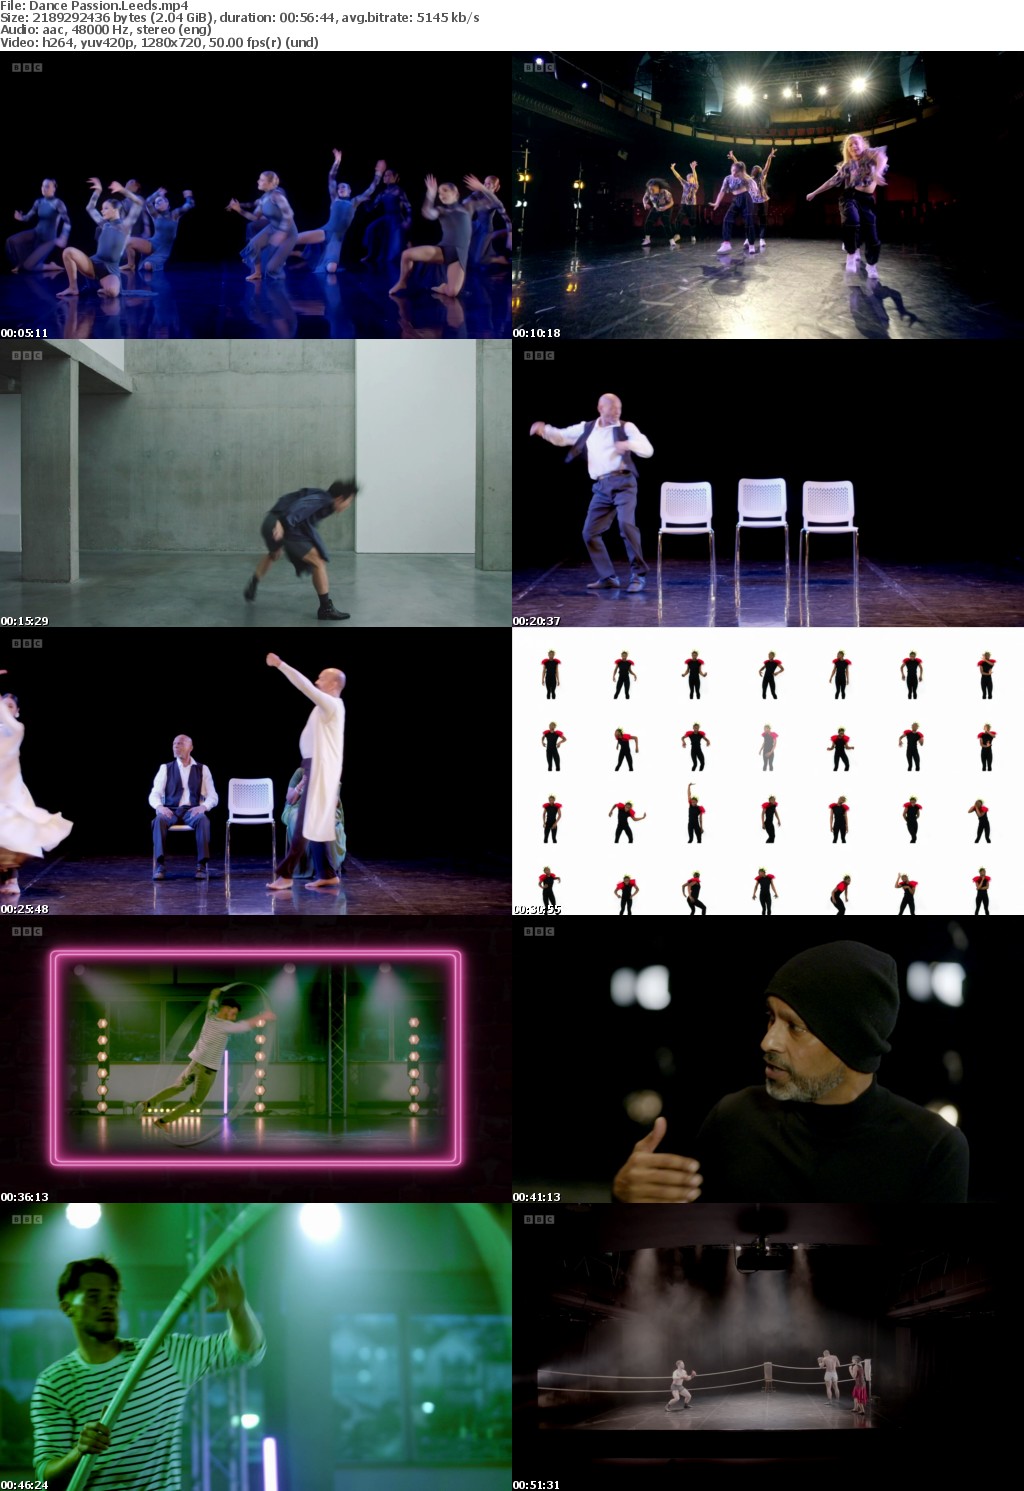 Dance Passion (1280x720p HD, 50fps)